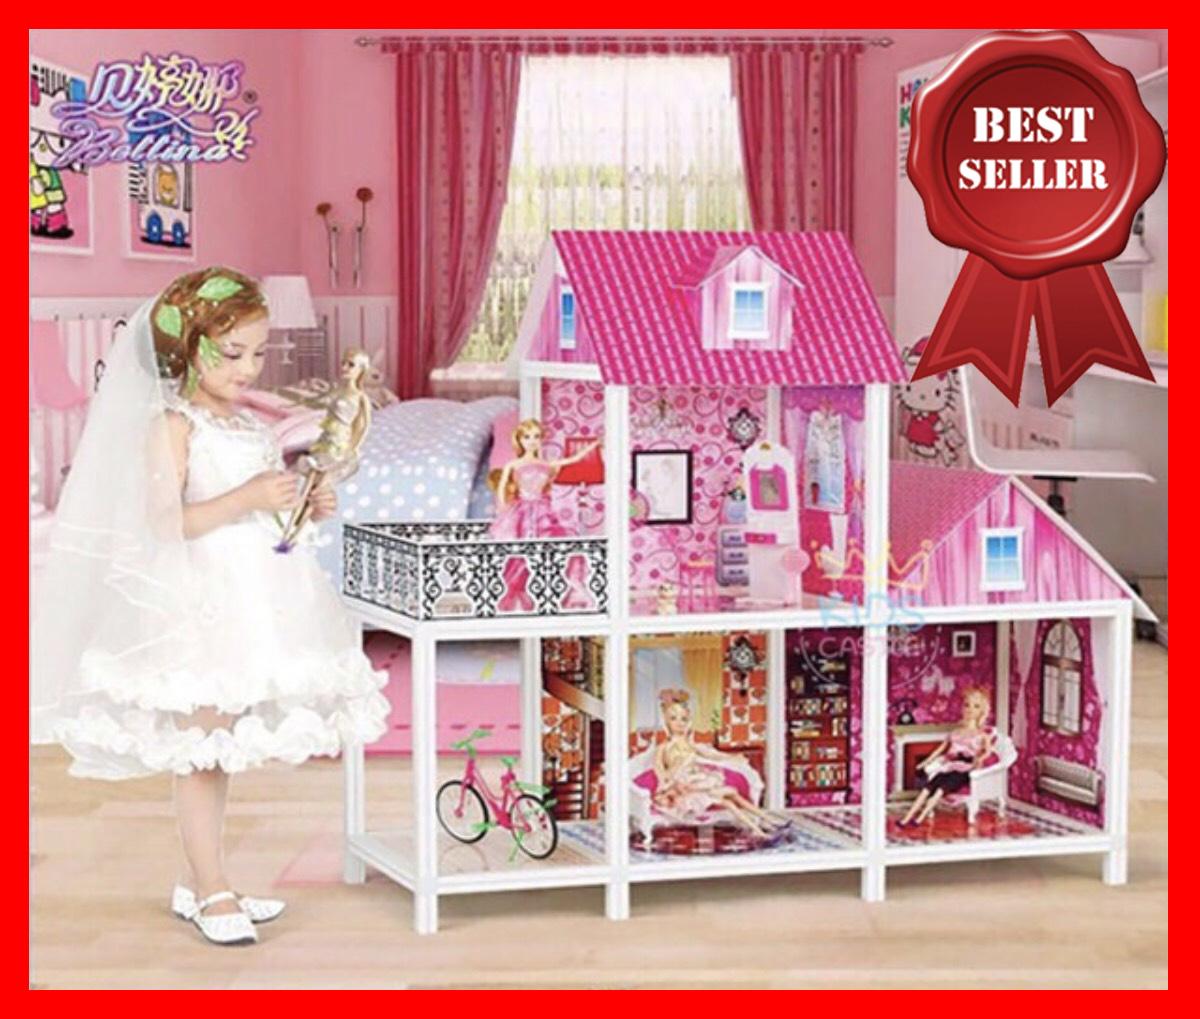 บ้านของเล่น บ้านตุ๊กตา2 ชั้นขนาดใหญ่พร้อมอุปกรณ์และตุ๊กตาสุดสวย 3ตัว ของเล่นเด็ก